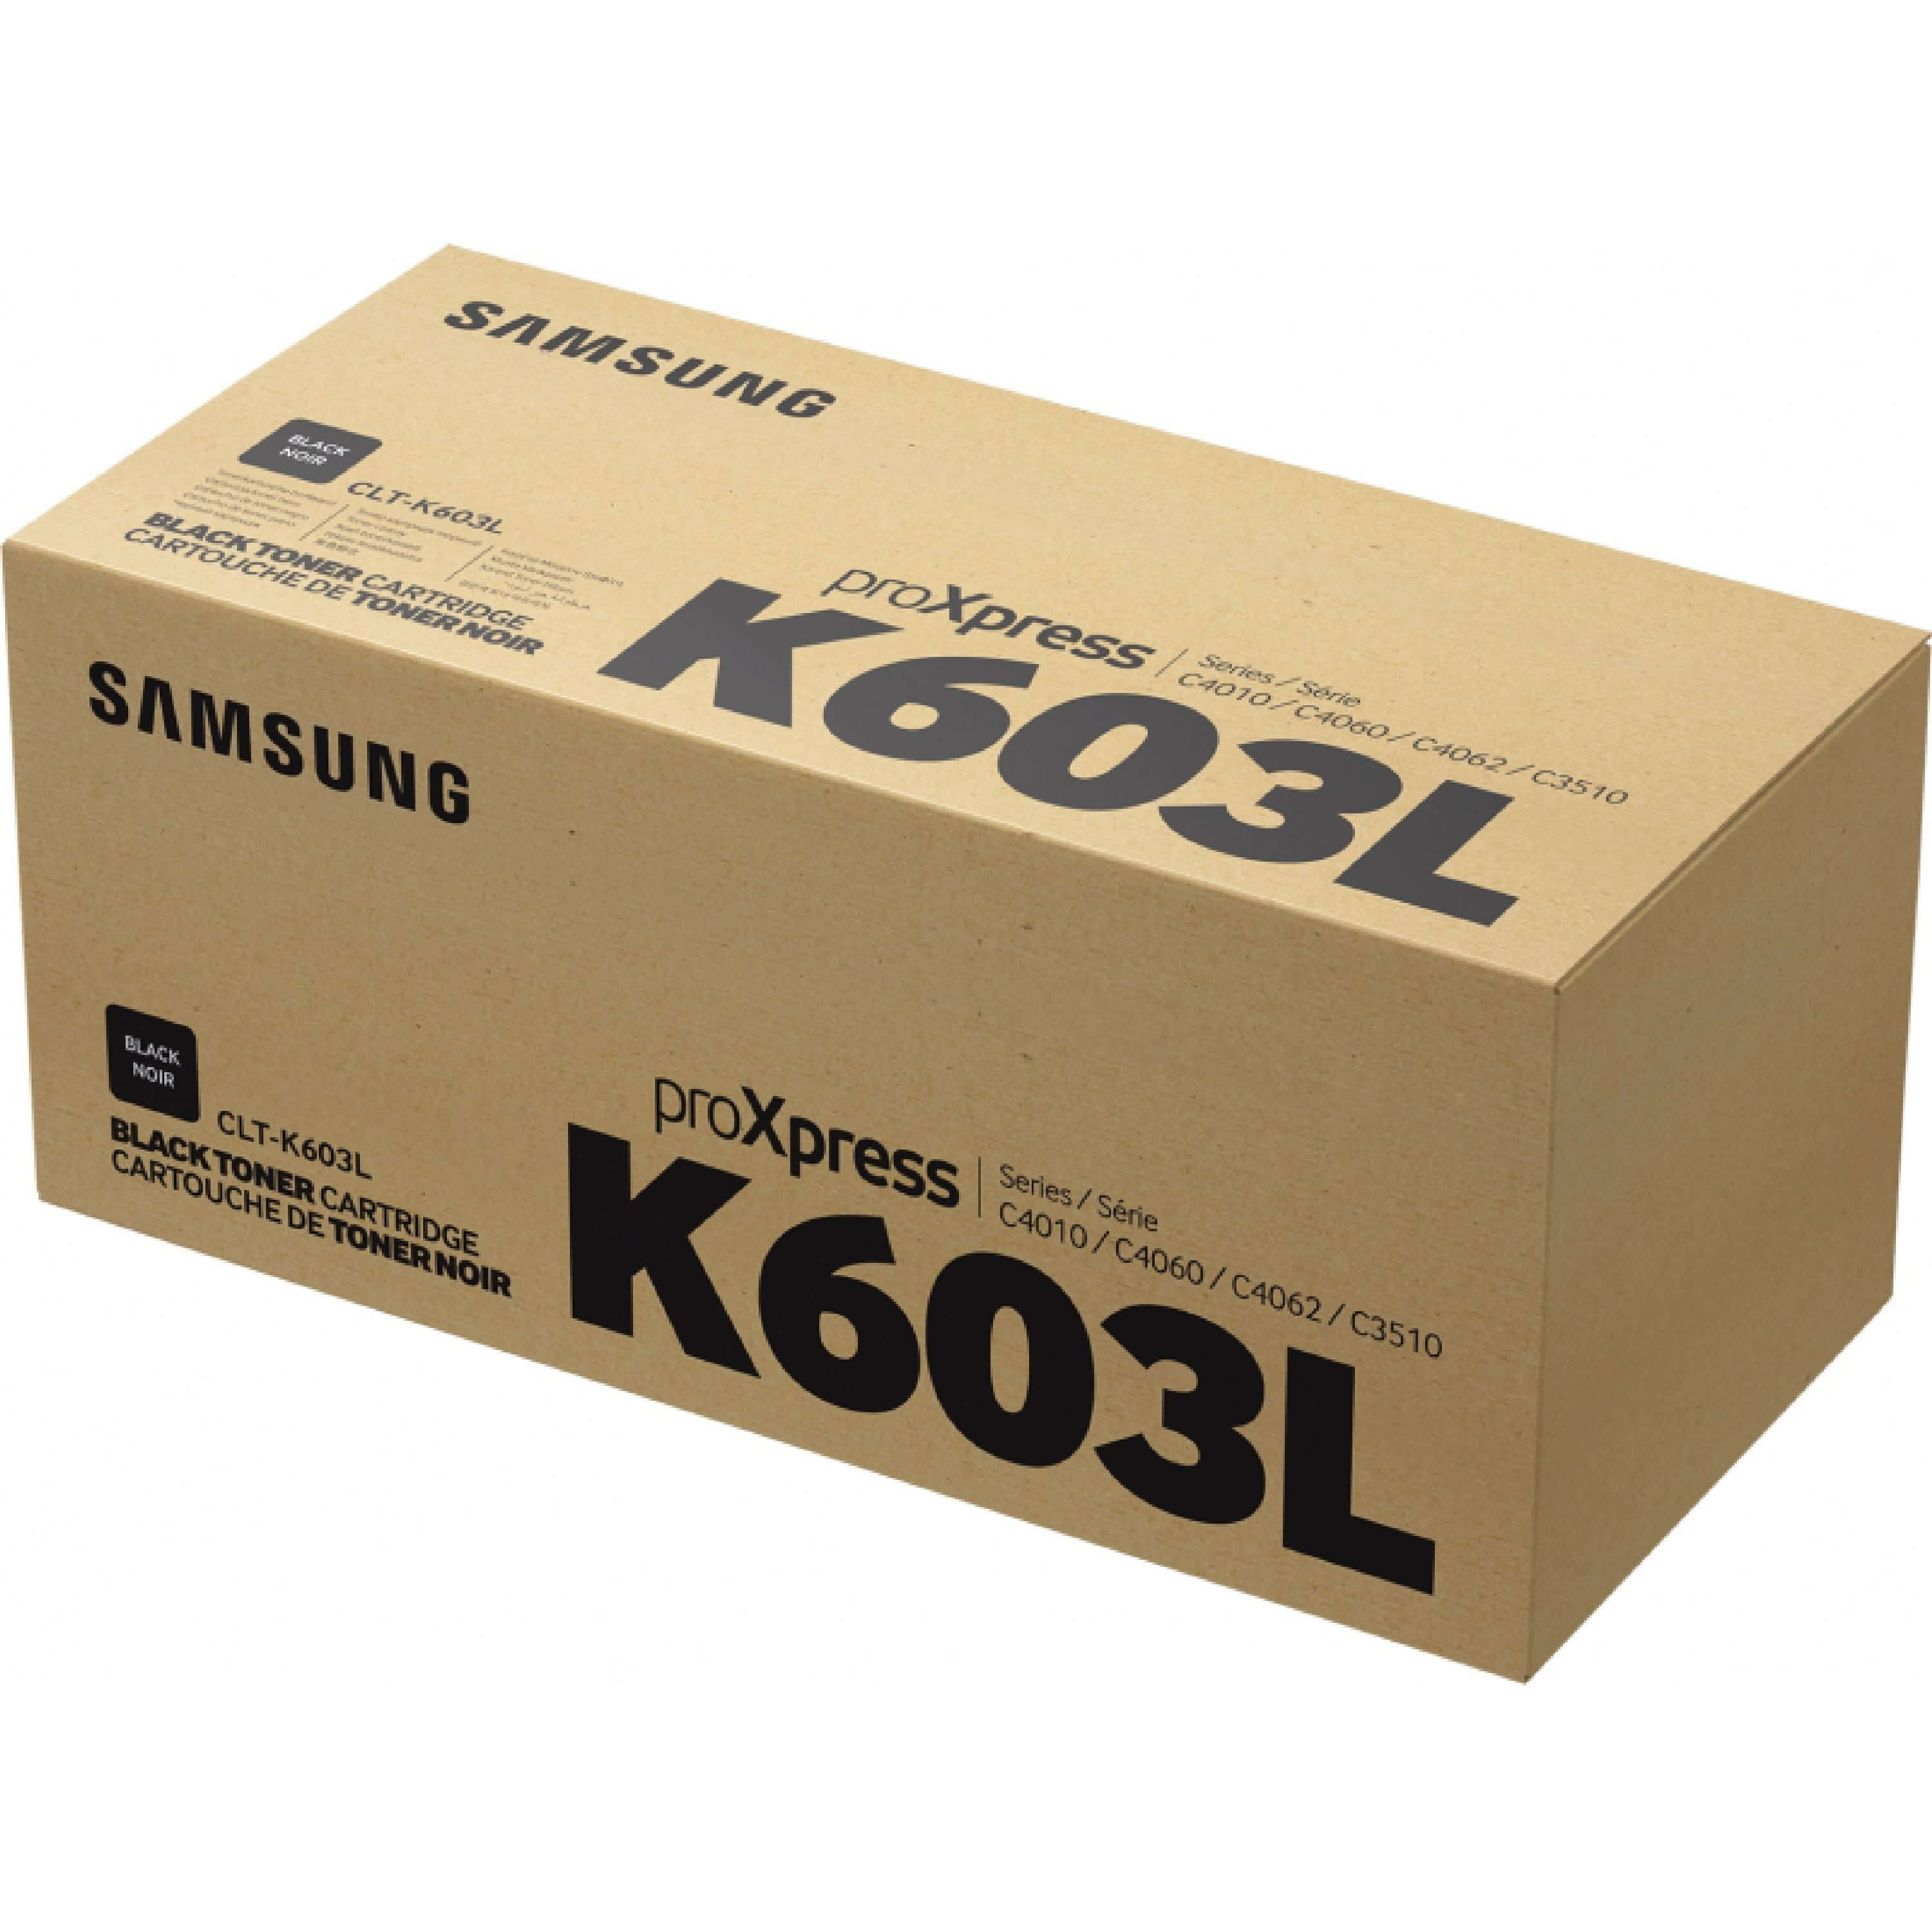 Original Toner Samsung ProXpress C 4060 FX (SU214A / CLT-K603L)